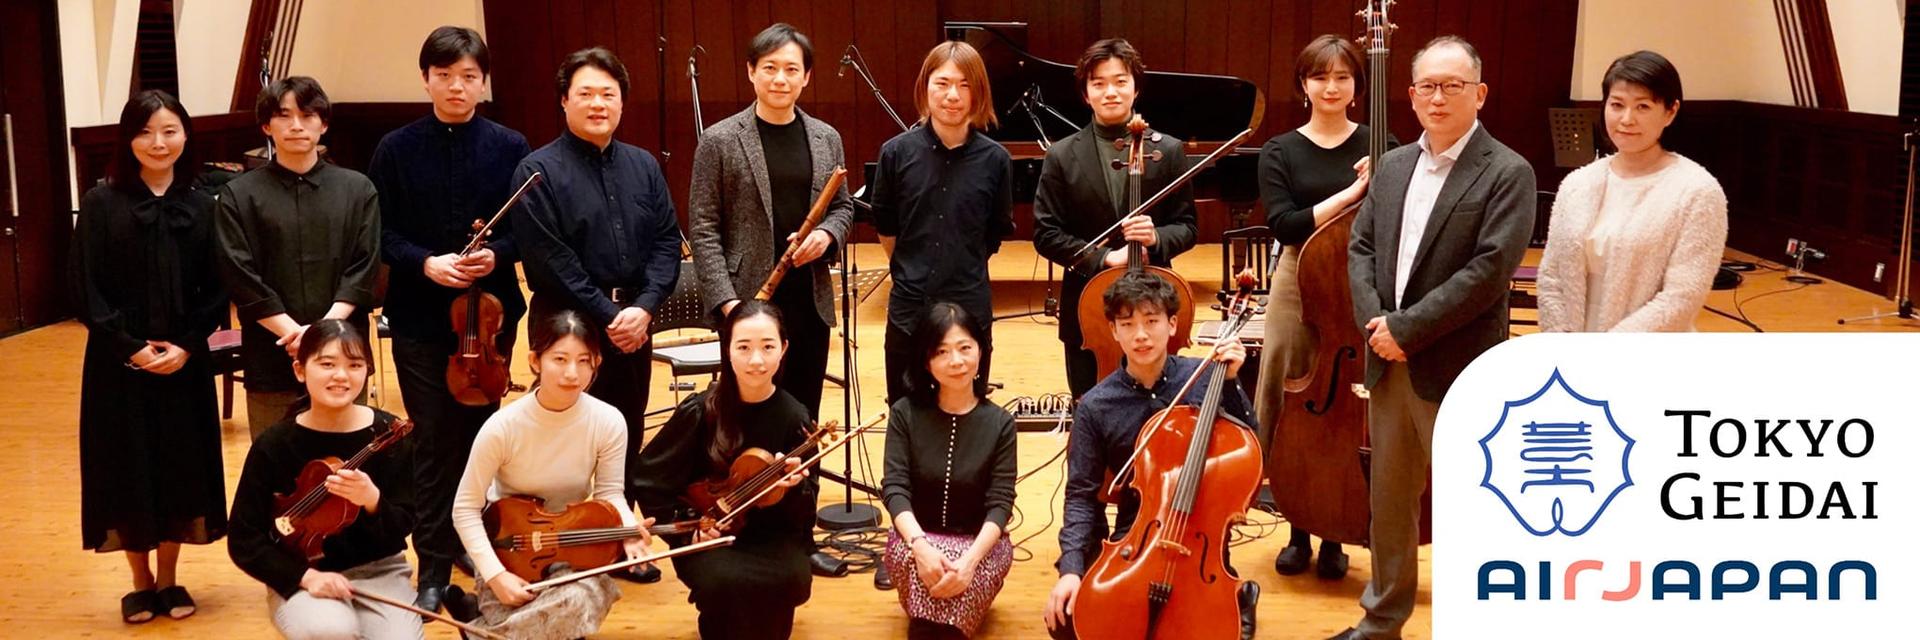 리코딩 사진: 작곡가 히야미즈 노에루 씨, 연주자 여러분, AirJapan 사원이 모여 있습니다.